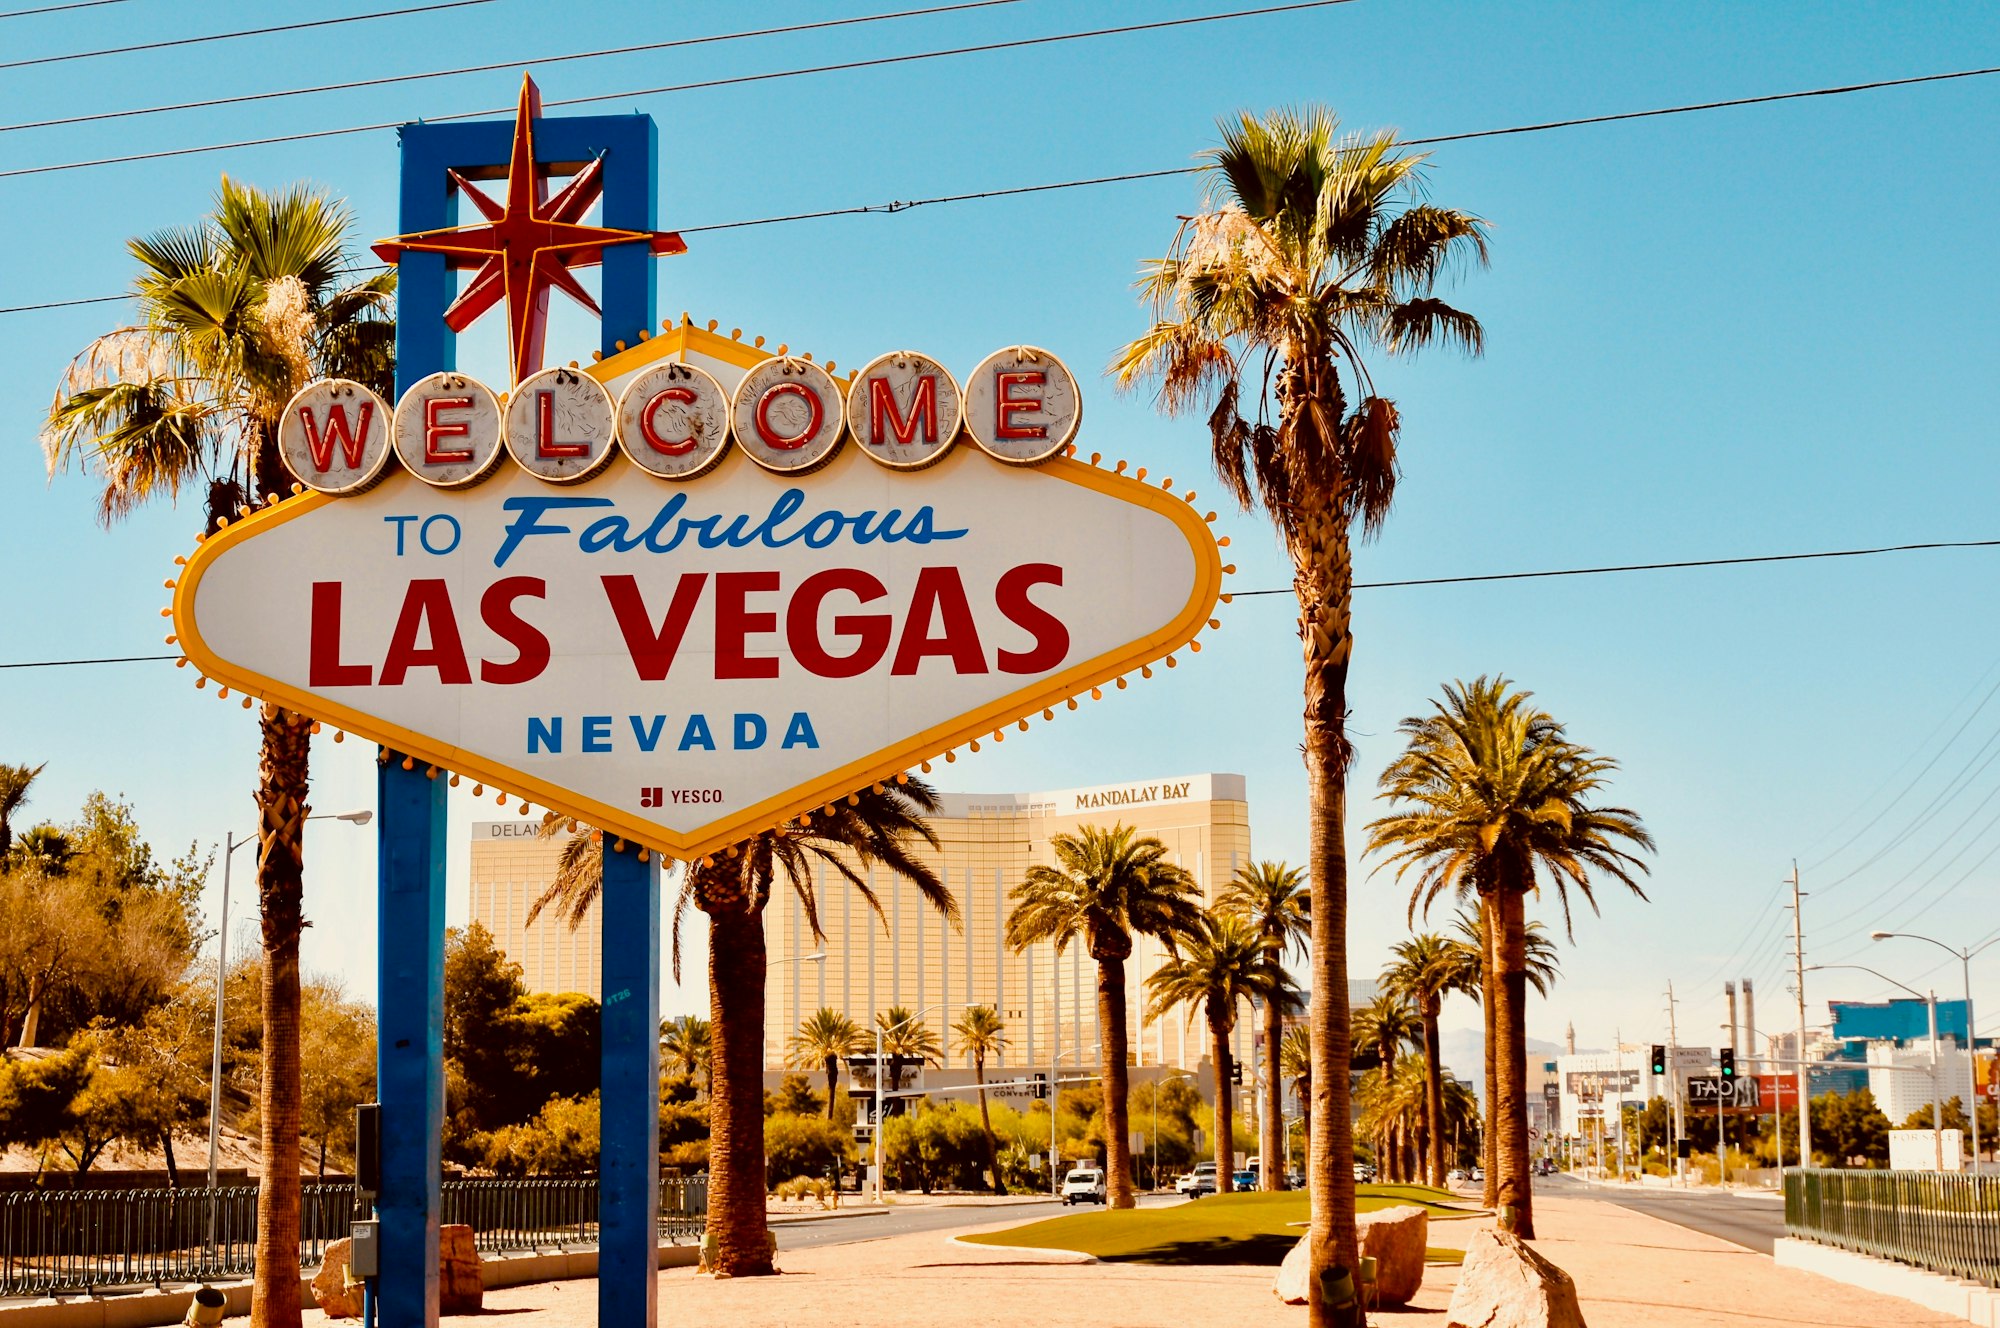 See you in Las Vegas! 🙌